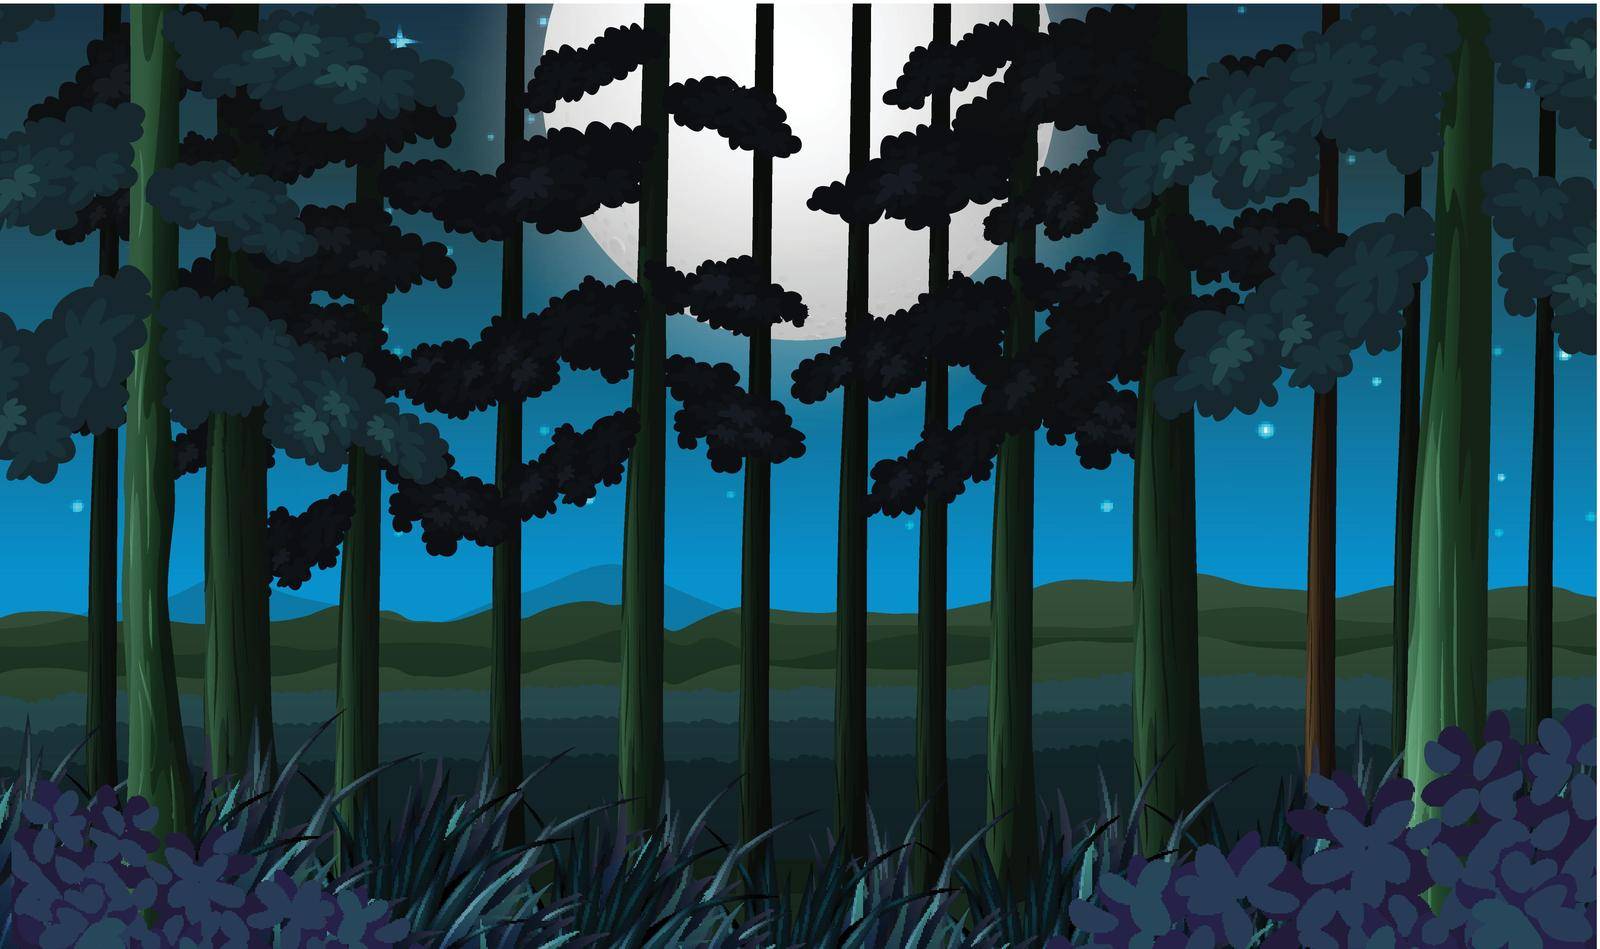 A dark forest at night illustration